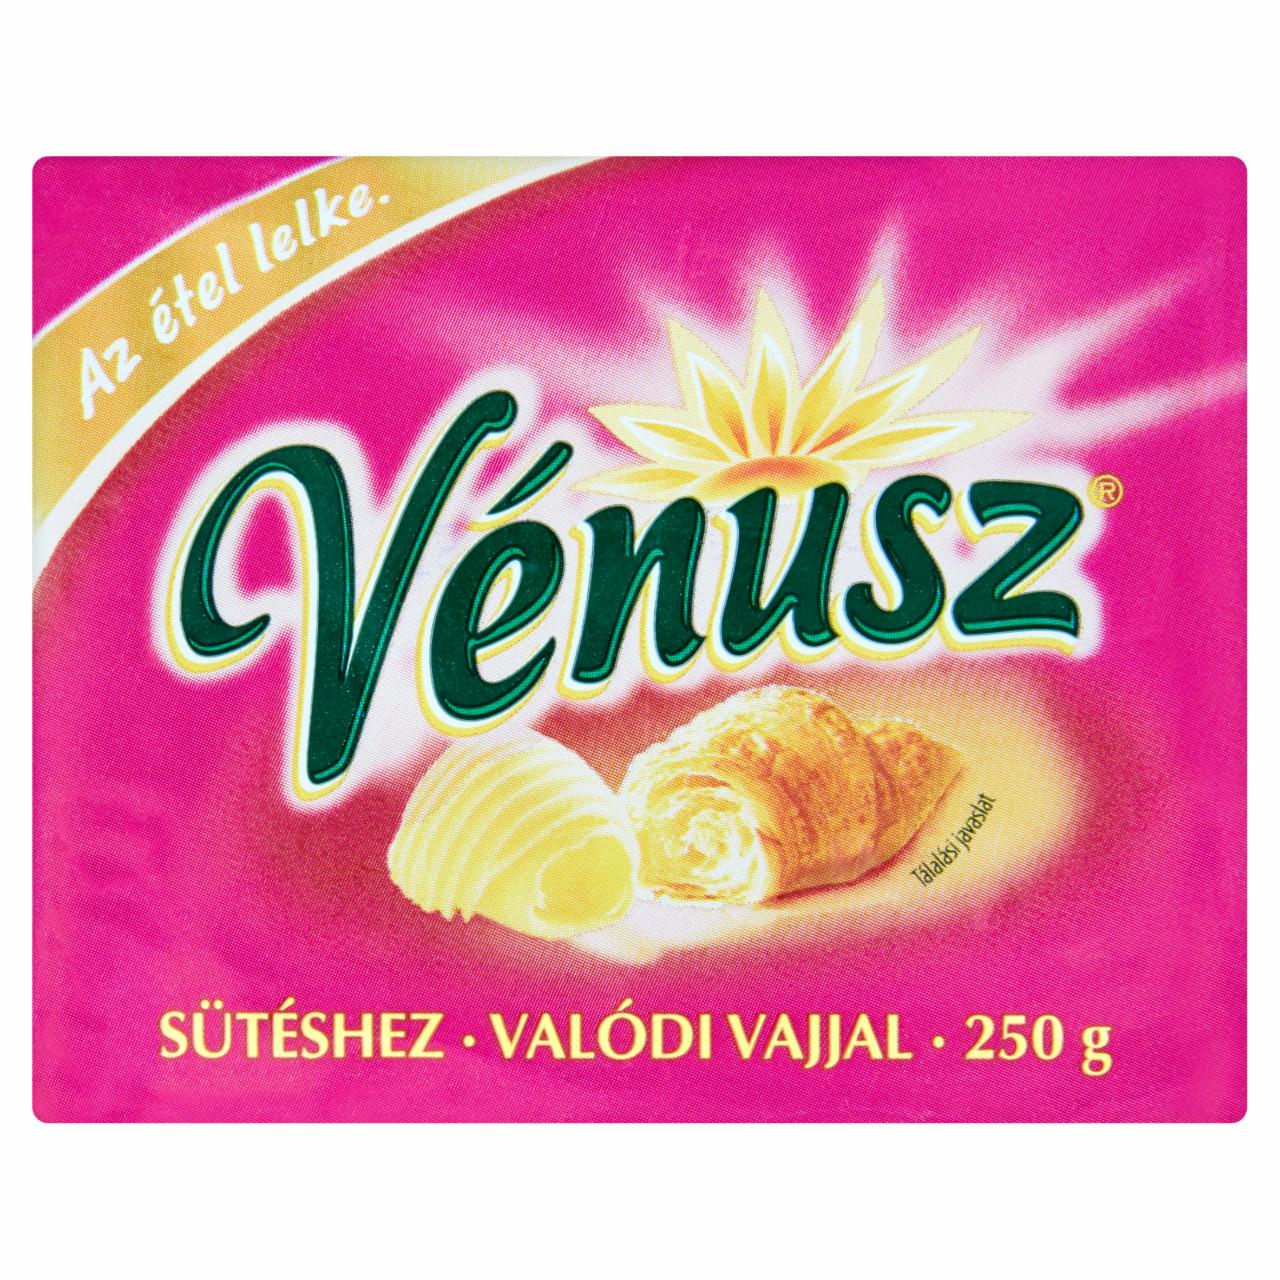 Képek - Vénusz Valódi Vajjal margarin és vaj keveréke 250 g